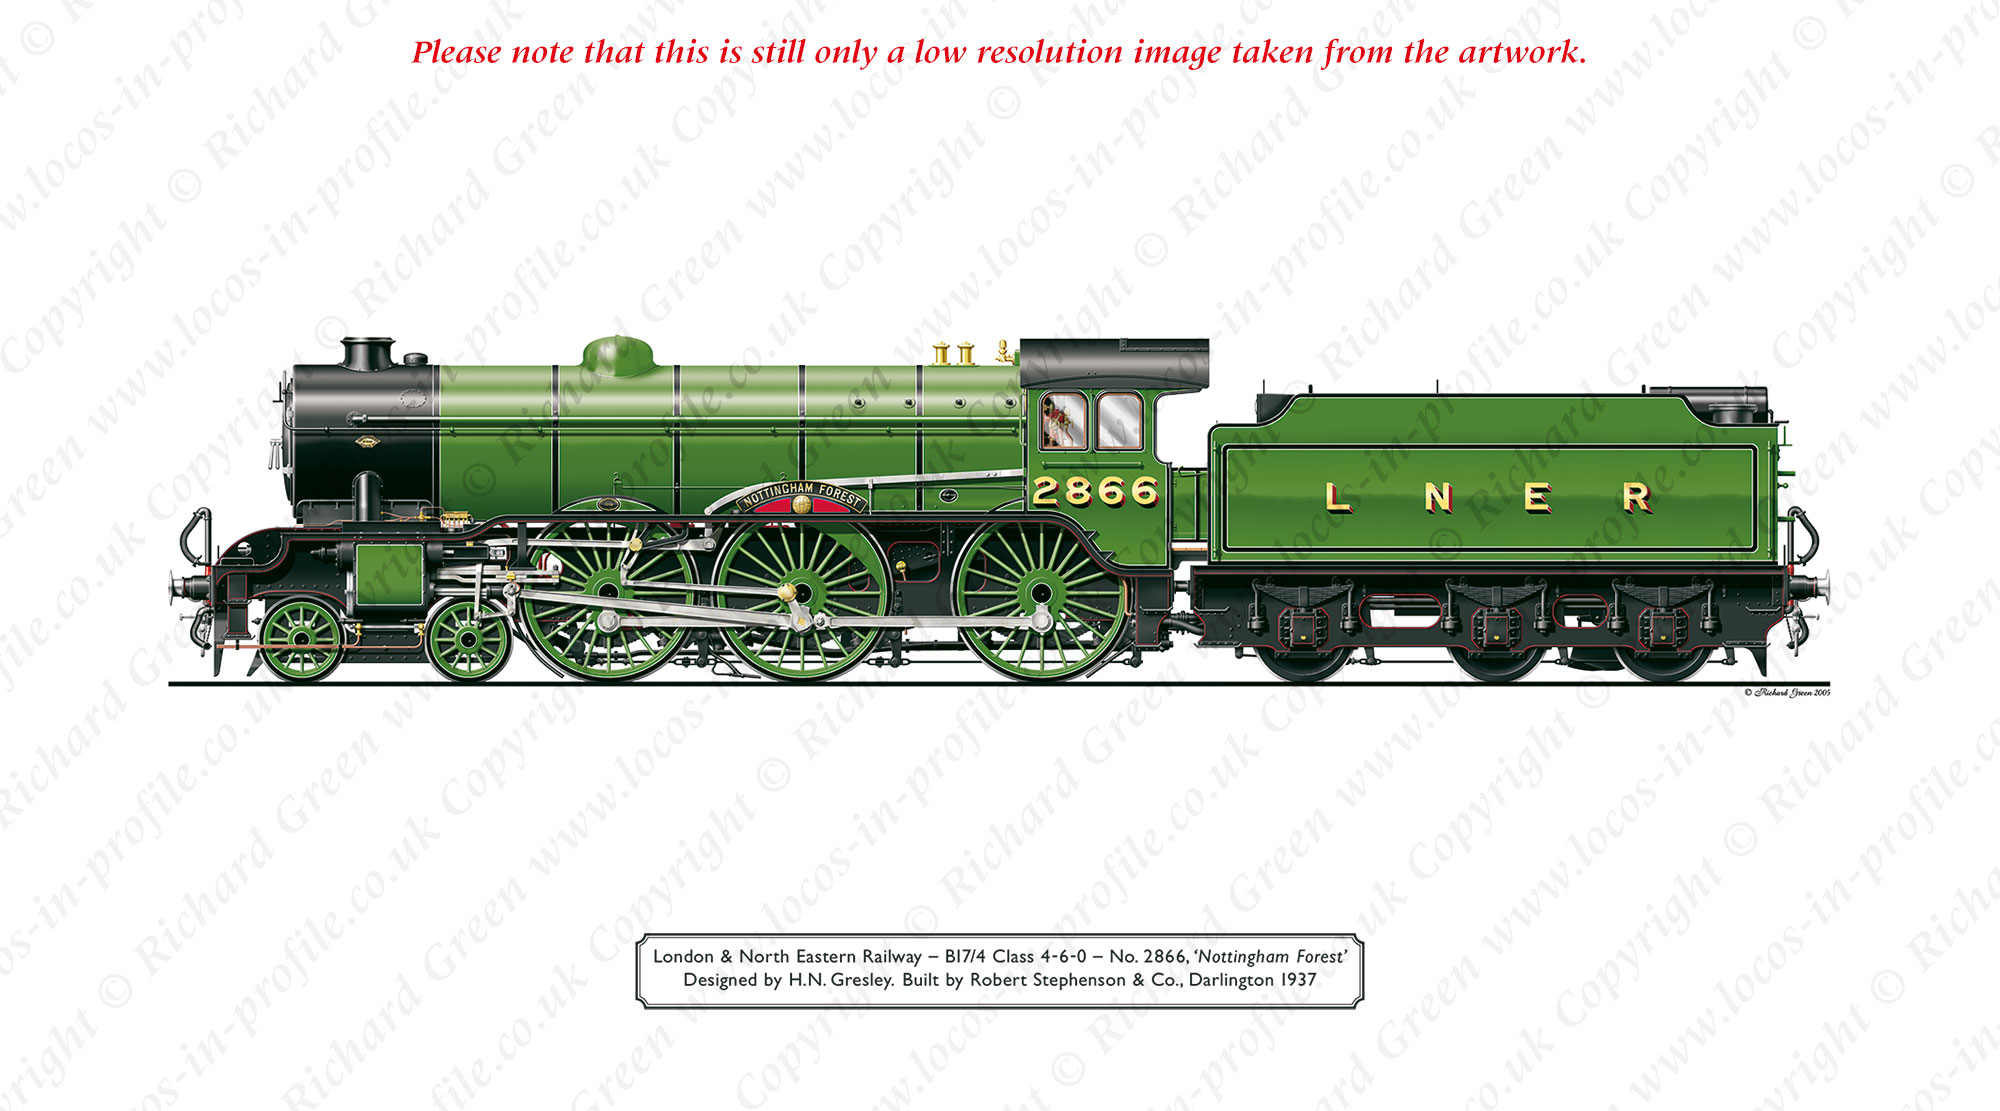 LNER B17/4 Footballer No 2866 (61666) Nottingham Forest (H. N. Gresley) Steam Locomotive Print